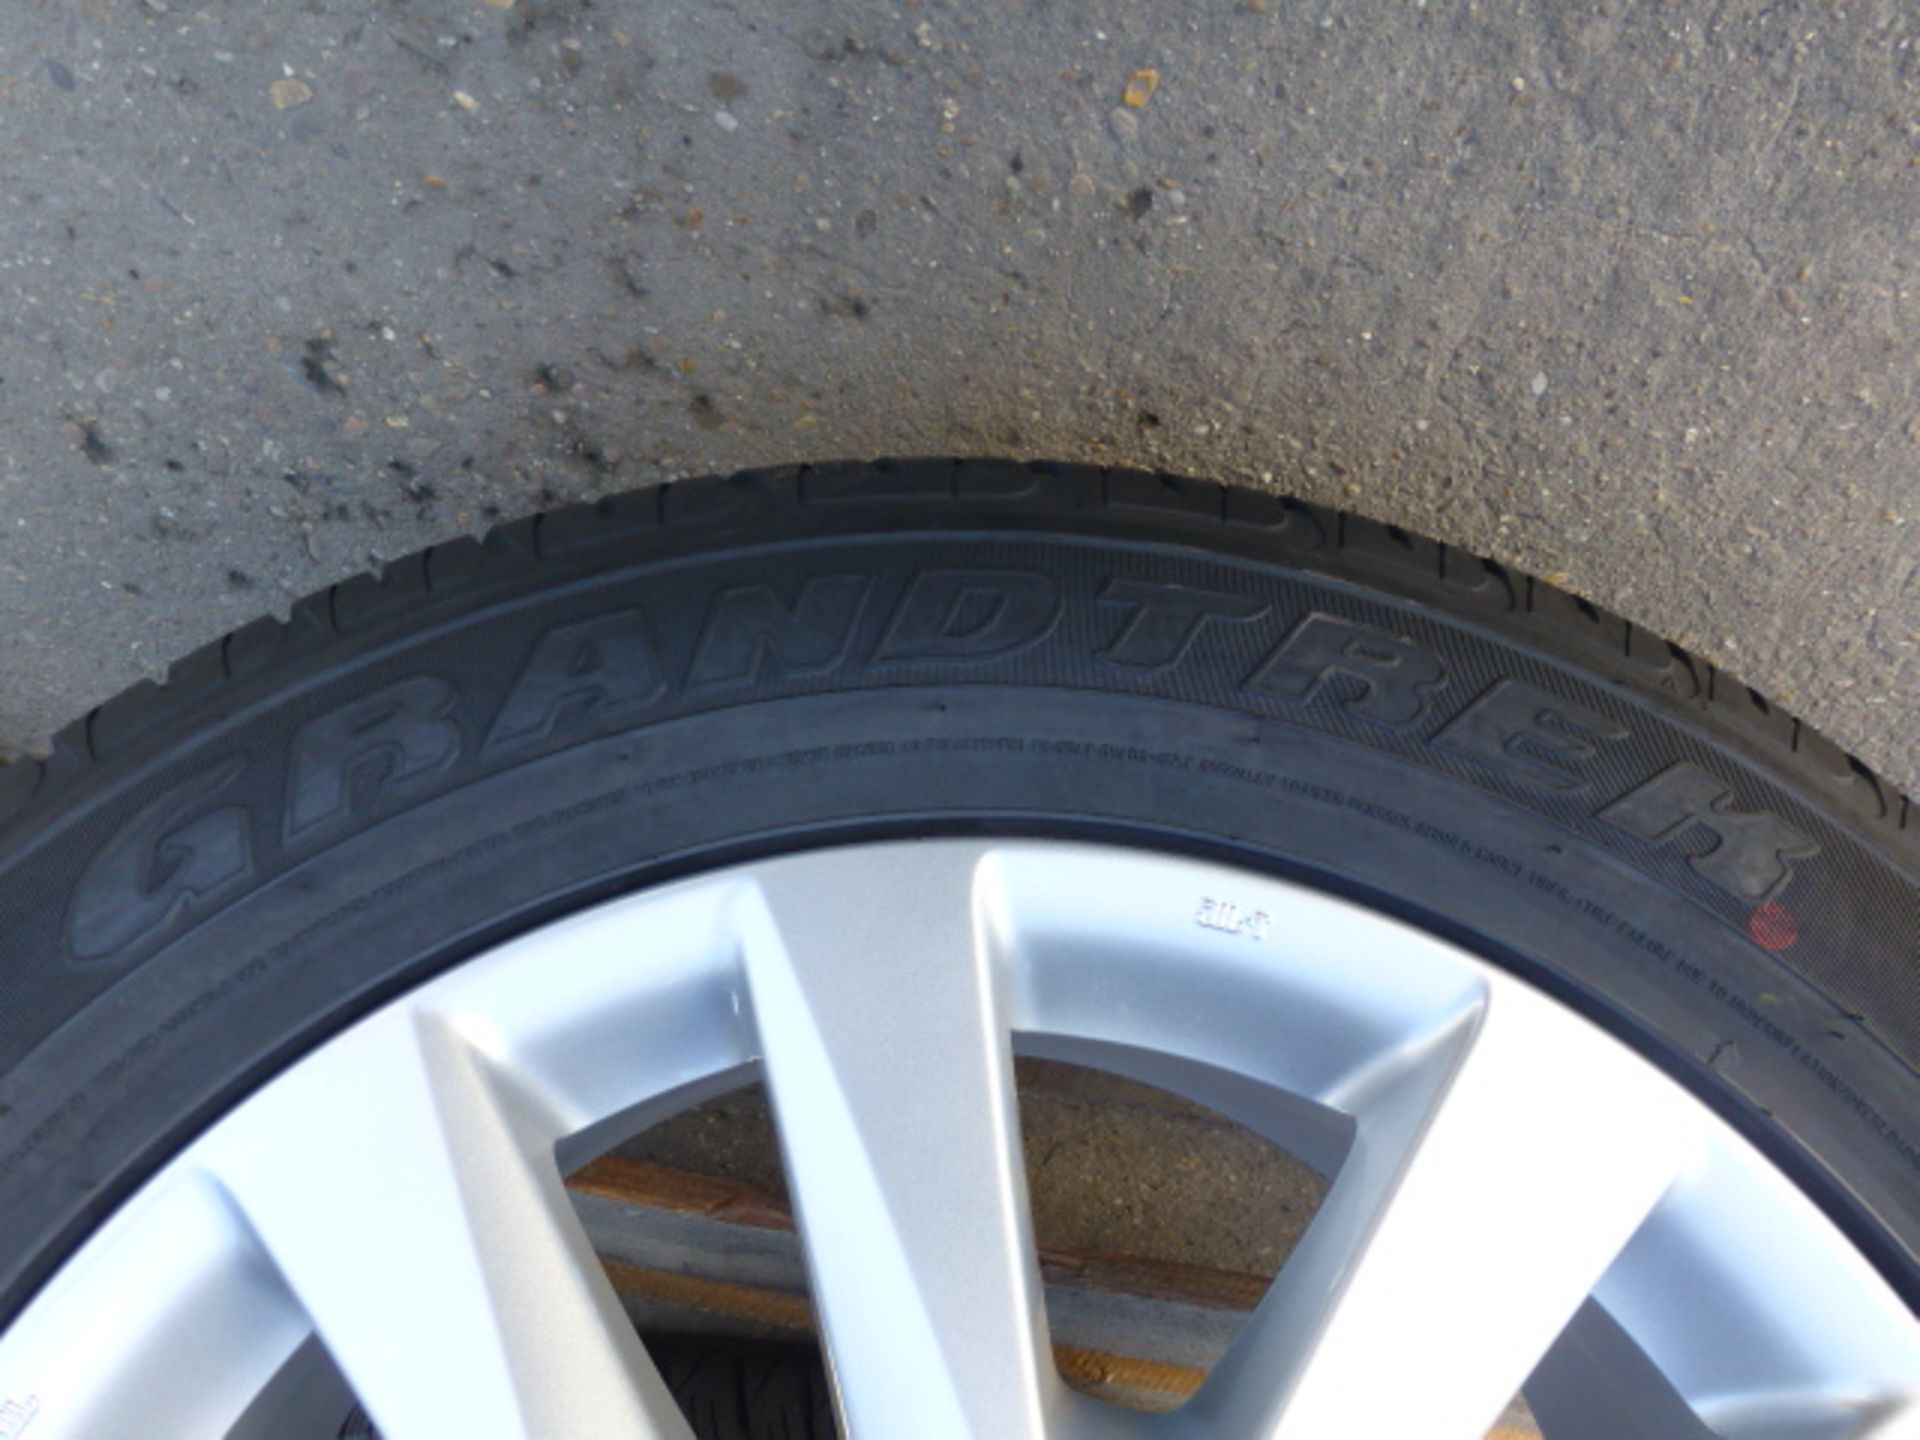 4 x Dunlop PT2A Grandtrek 285/50R20 Tyres on Land Cruiser V8 Rims - Image 4 of 6